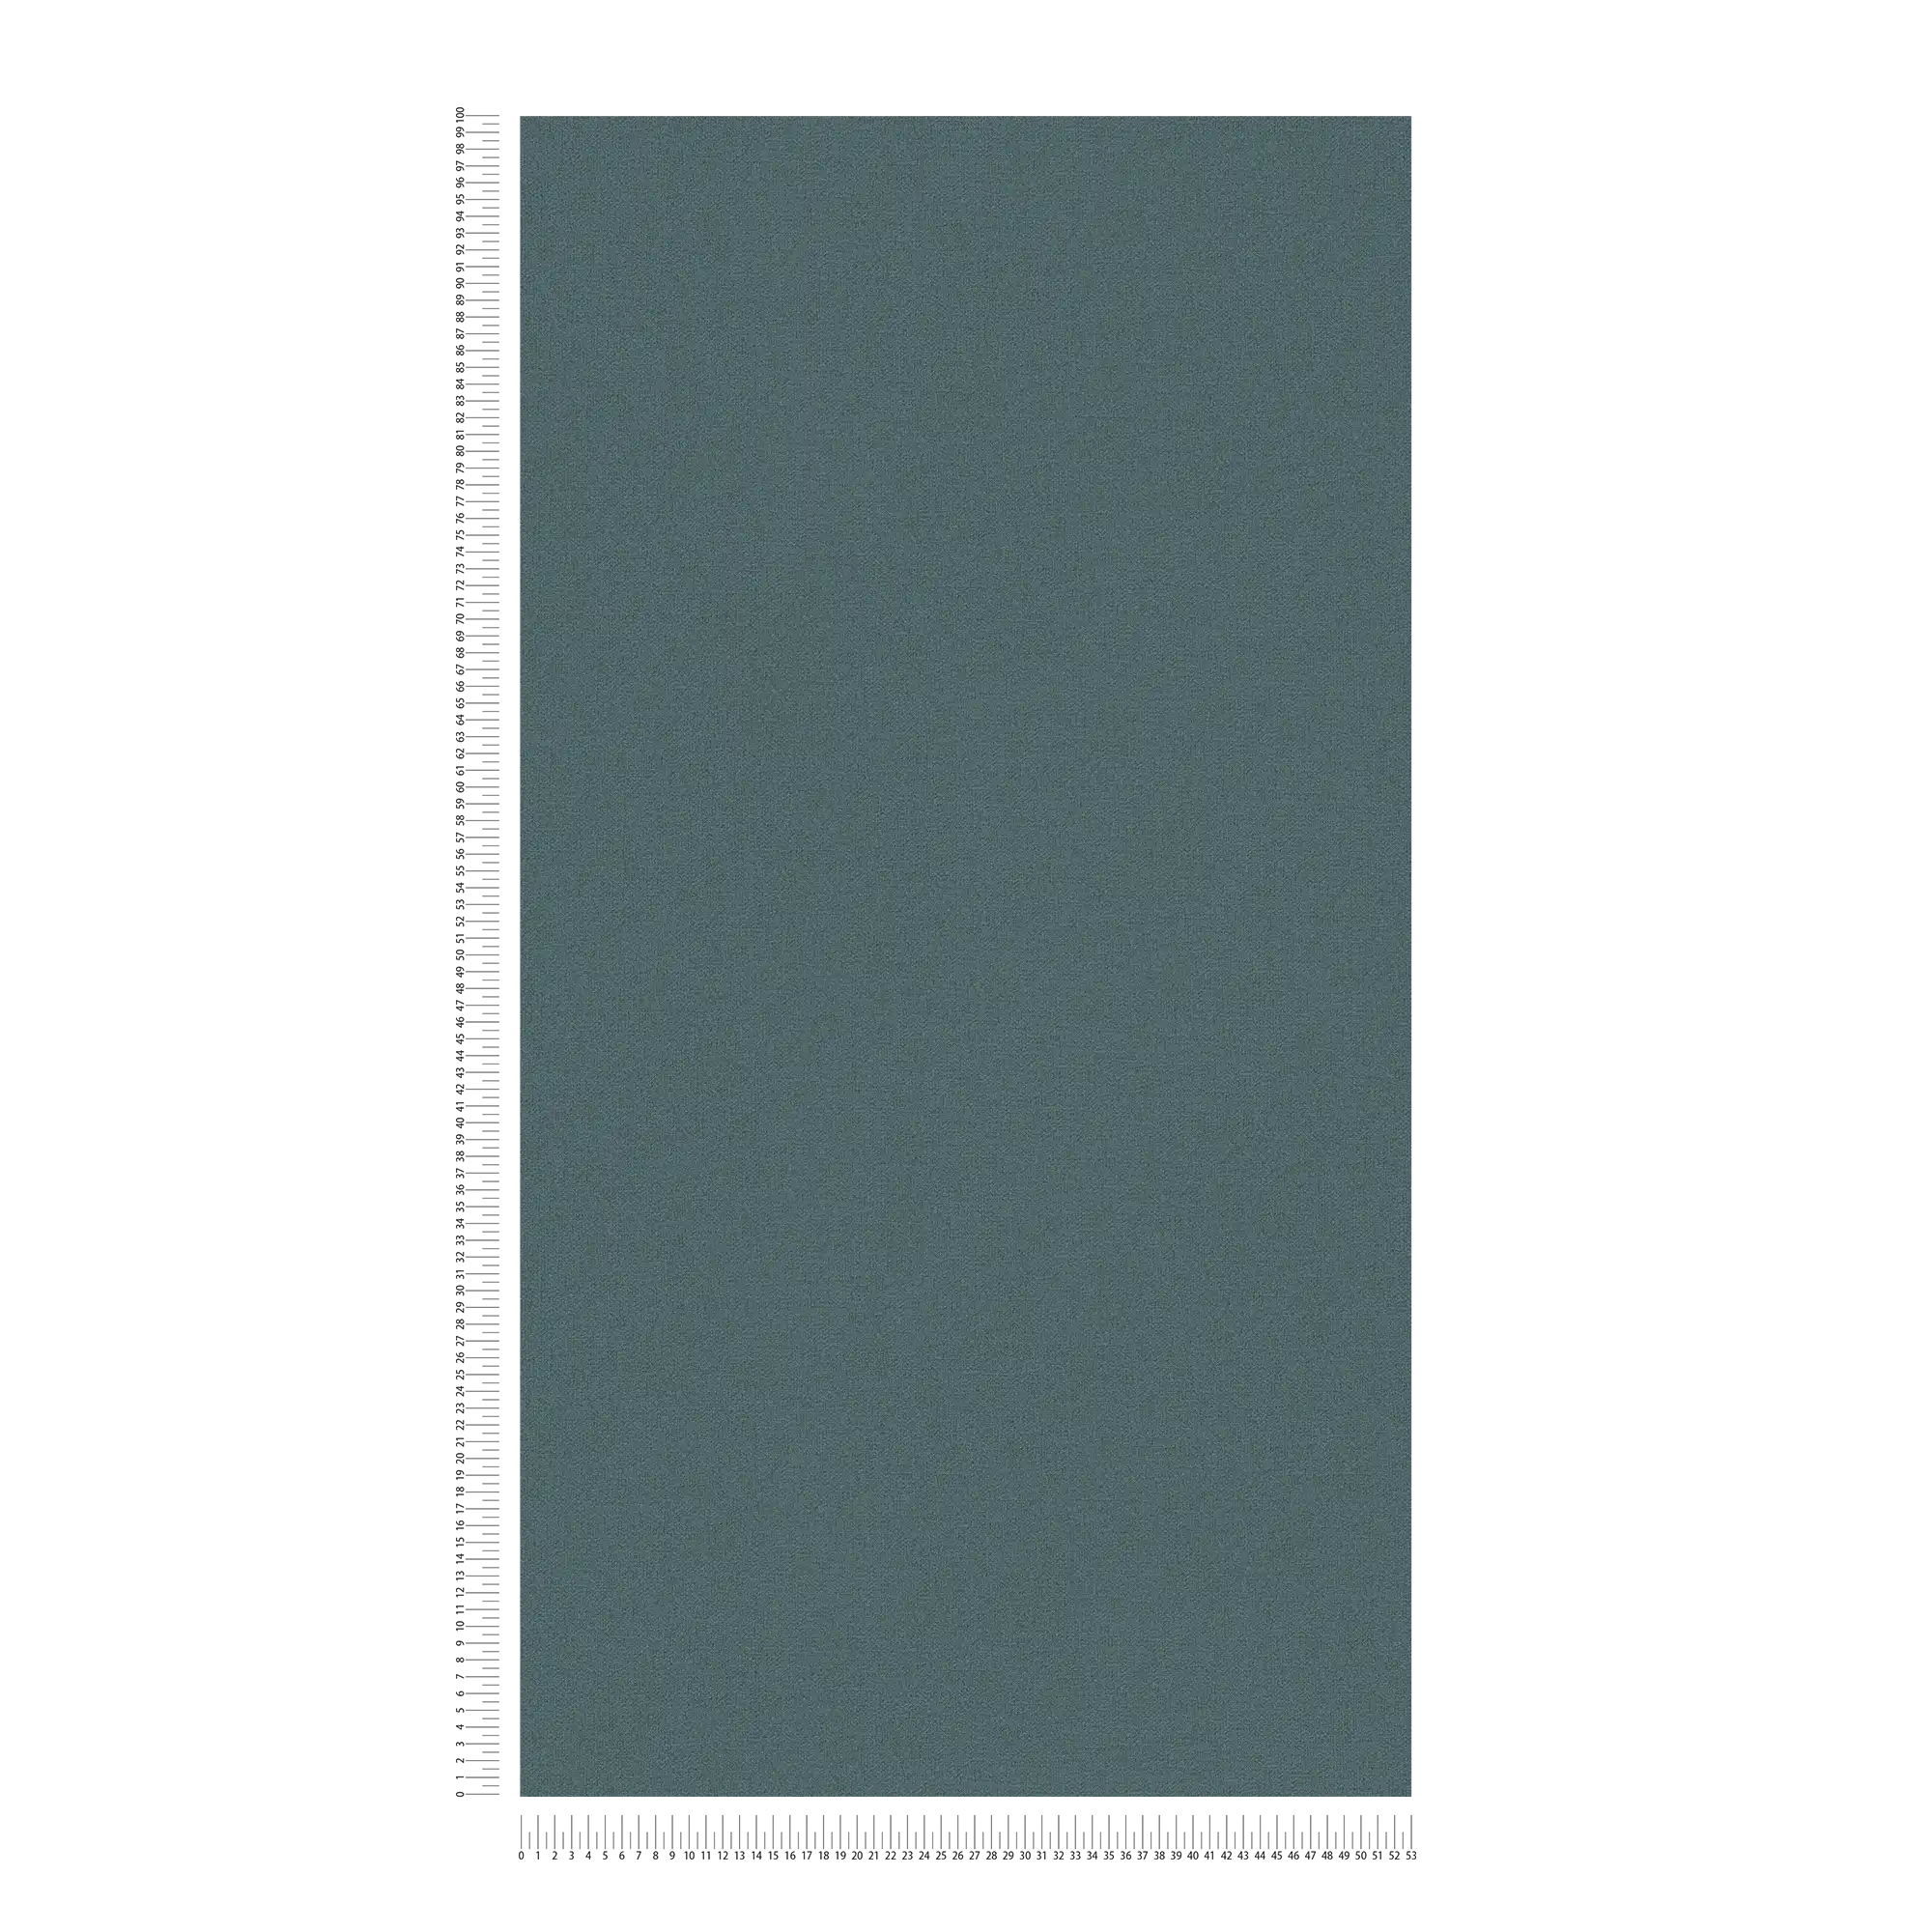             Carta da parati in tessuto non tessuto a tinta unita con aspetto di lino senza PVC - Blu, Grigio
        